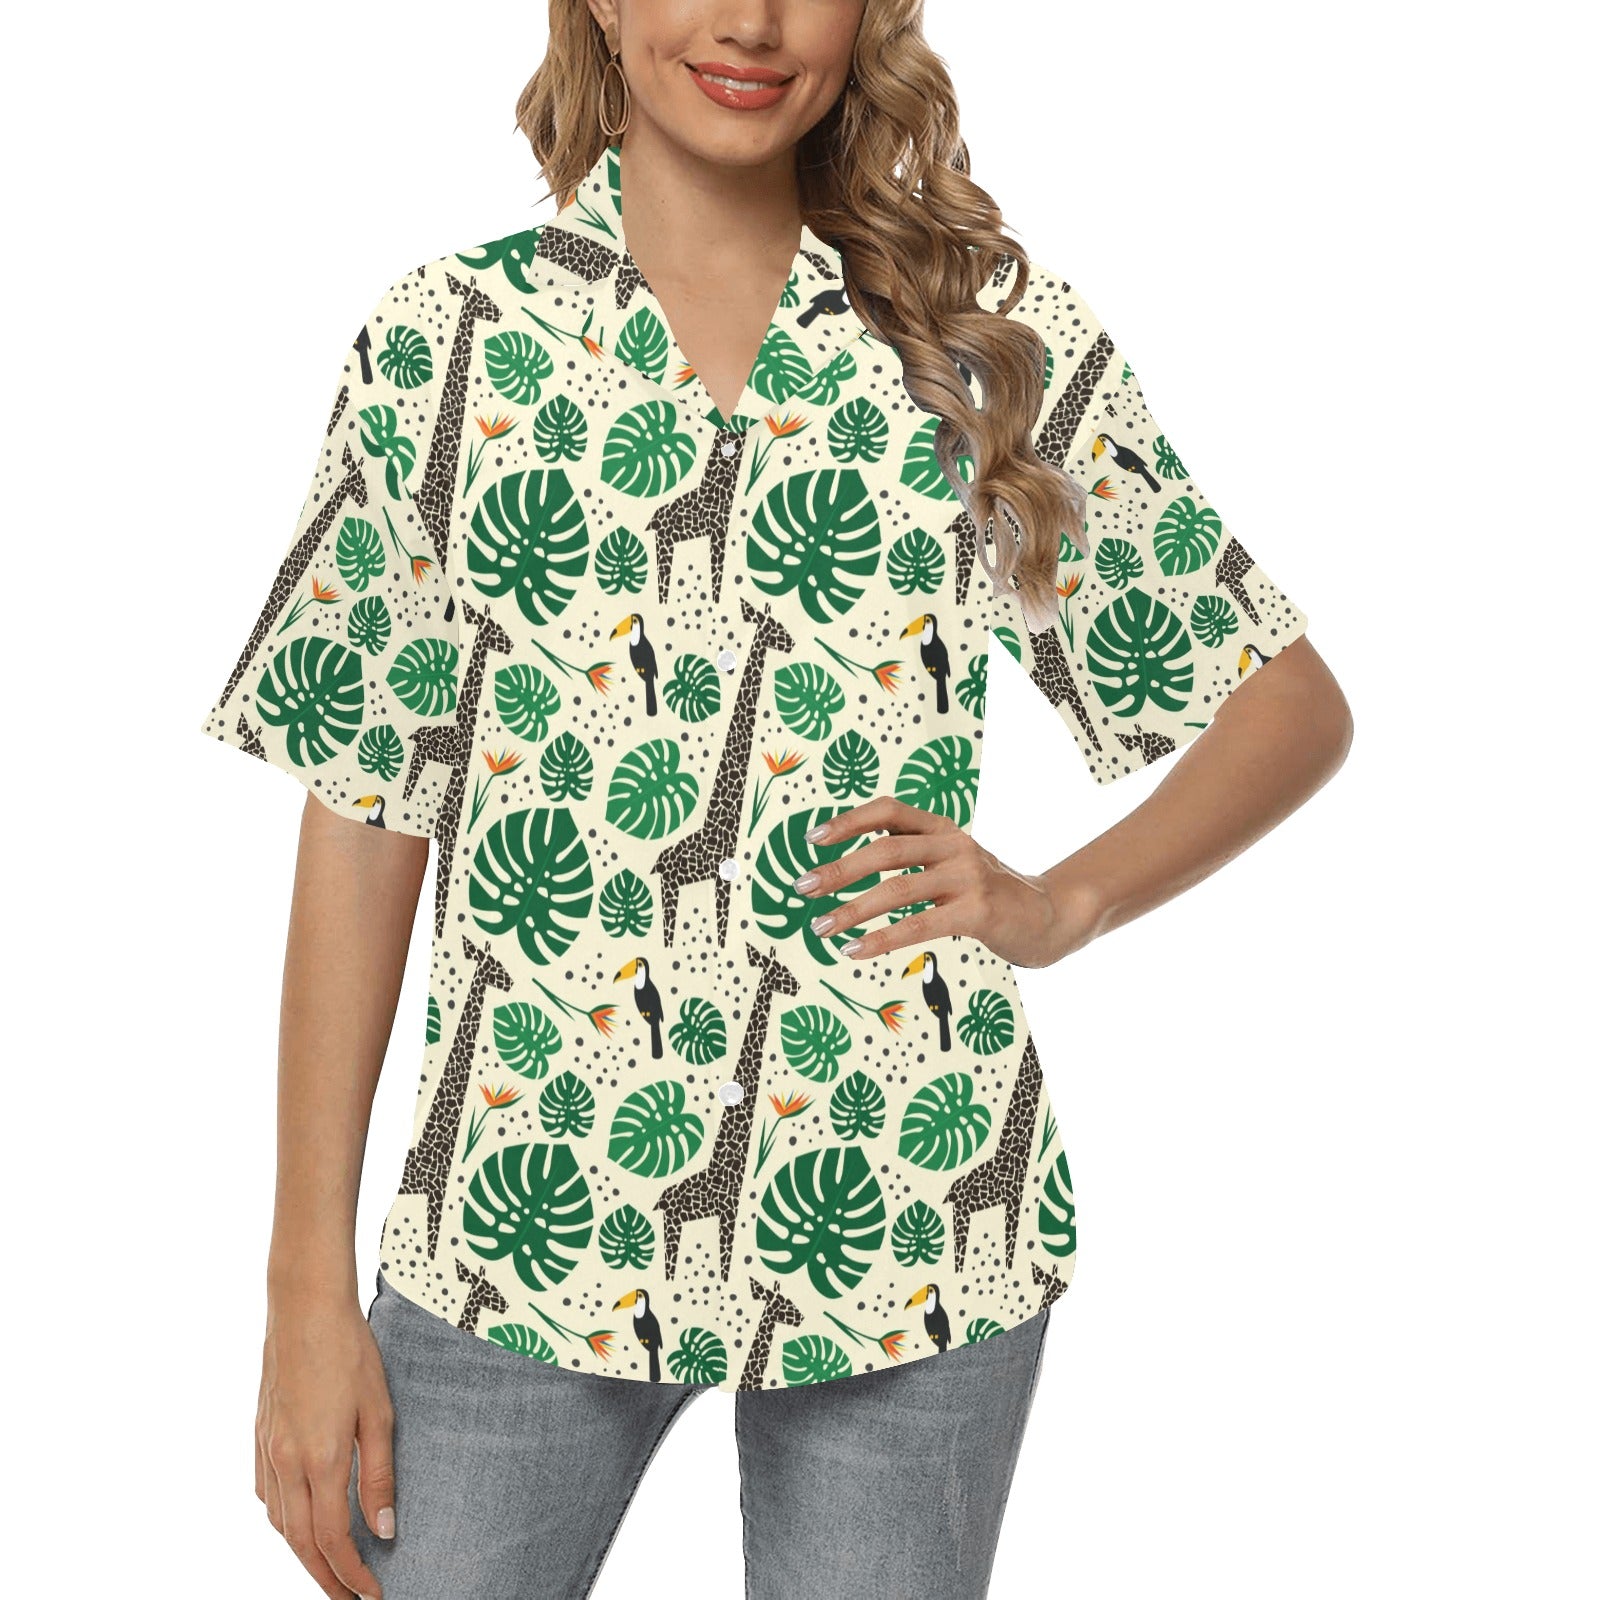 Rainforest Giraffe Pattern Print Design A02 Women's Hawaiian Shirt